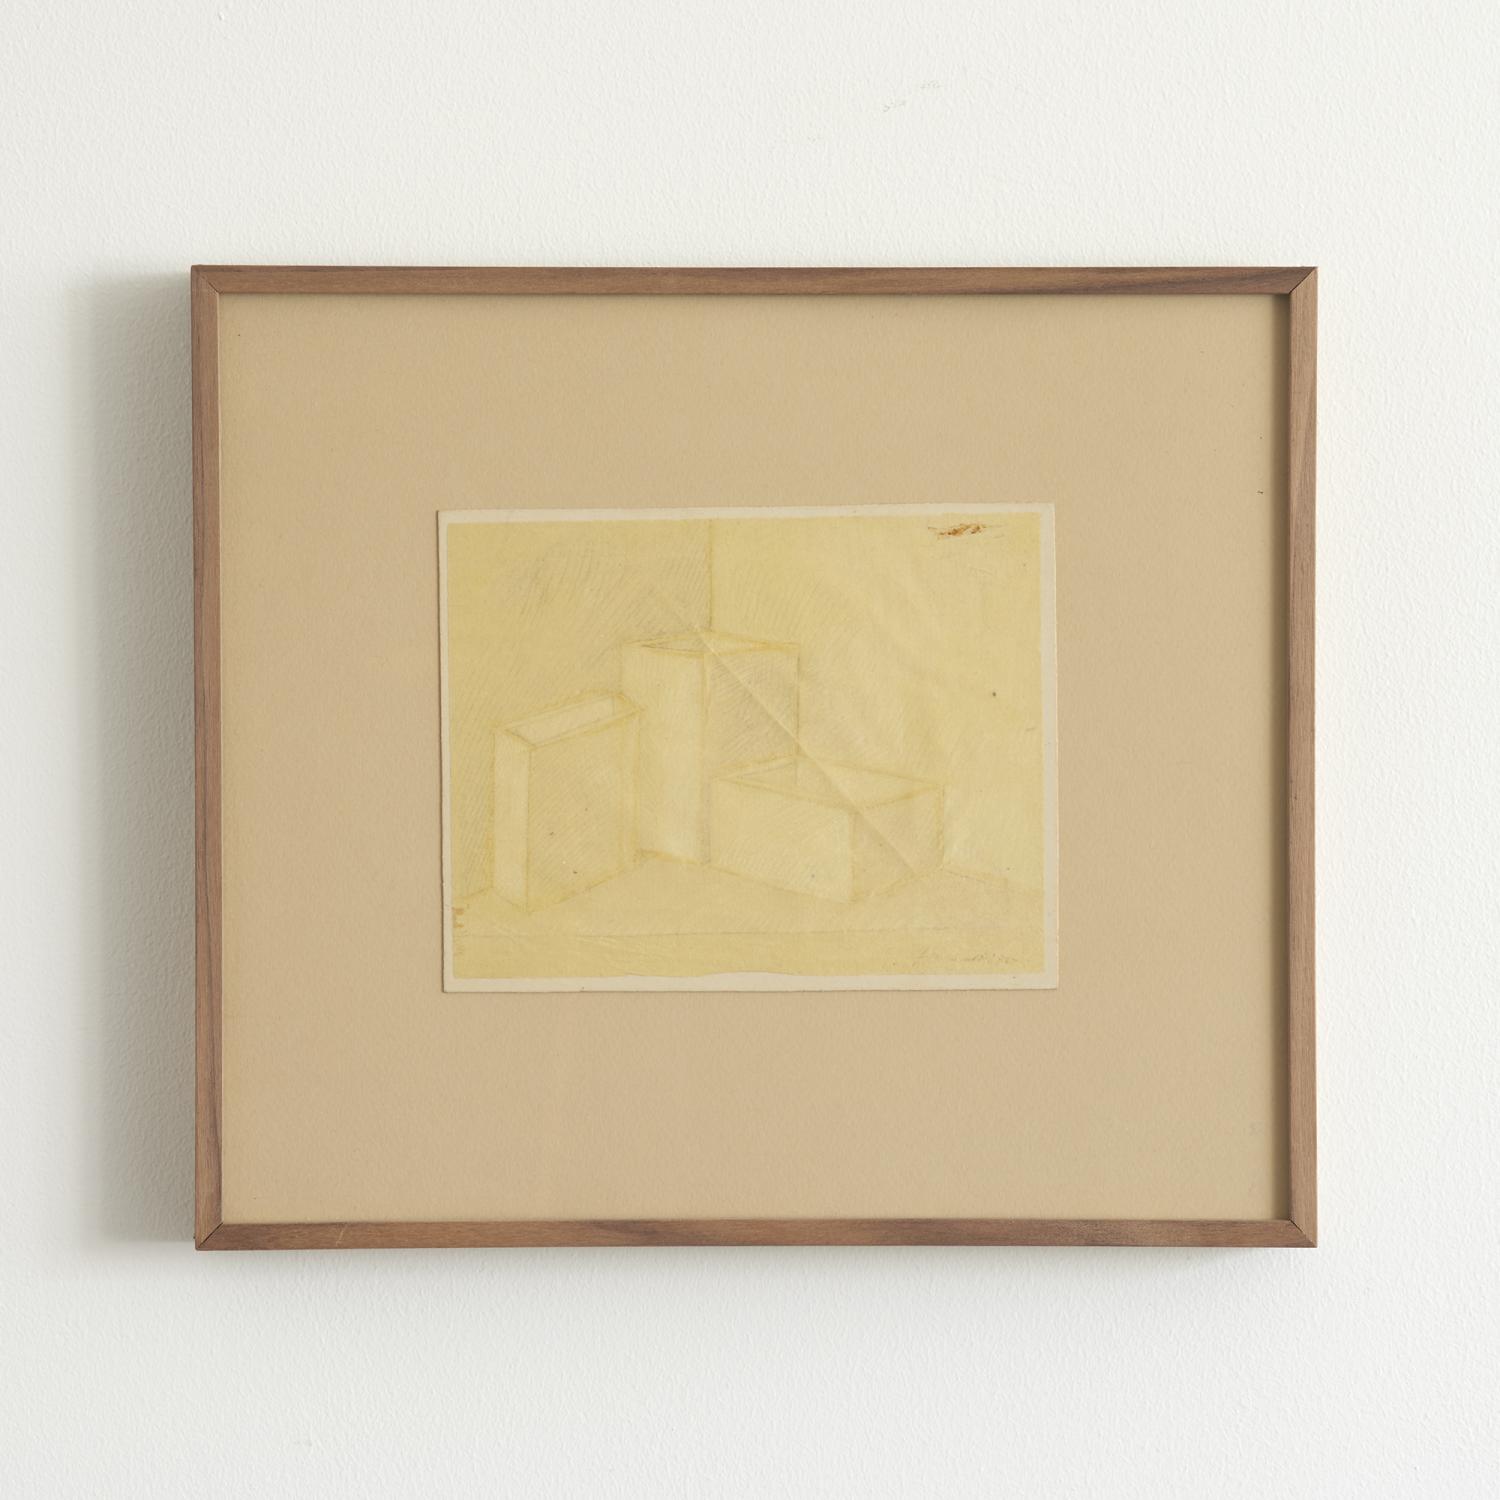 Piero Fornasetti cubist period